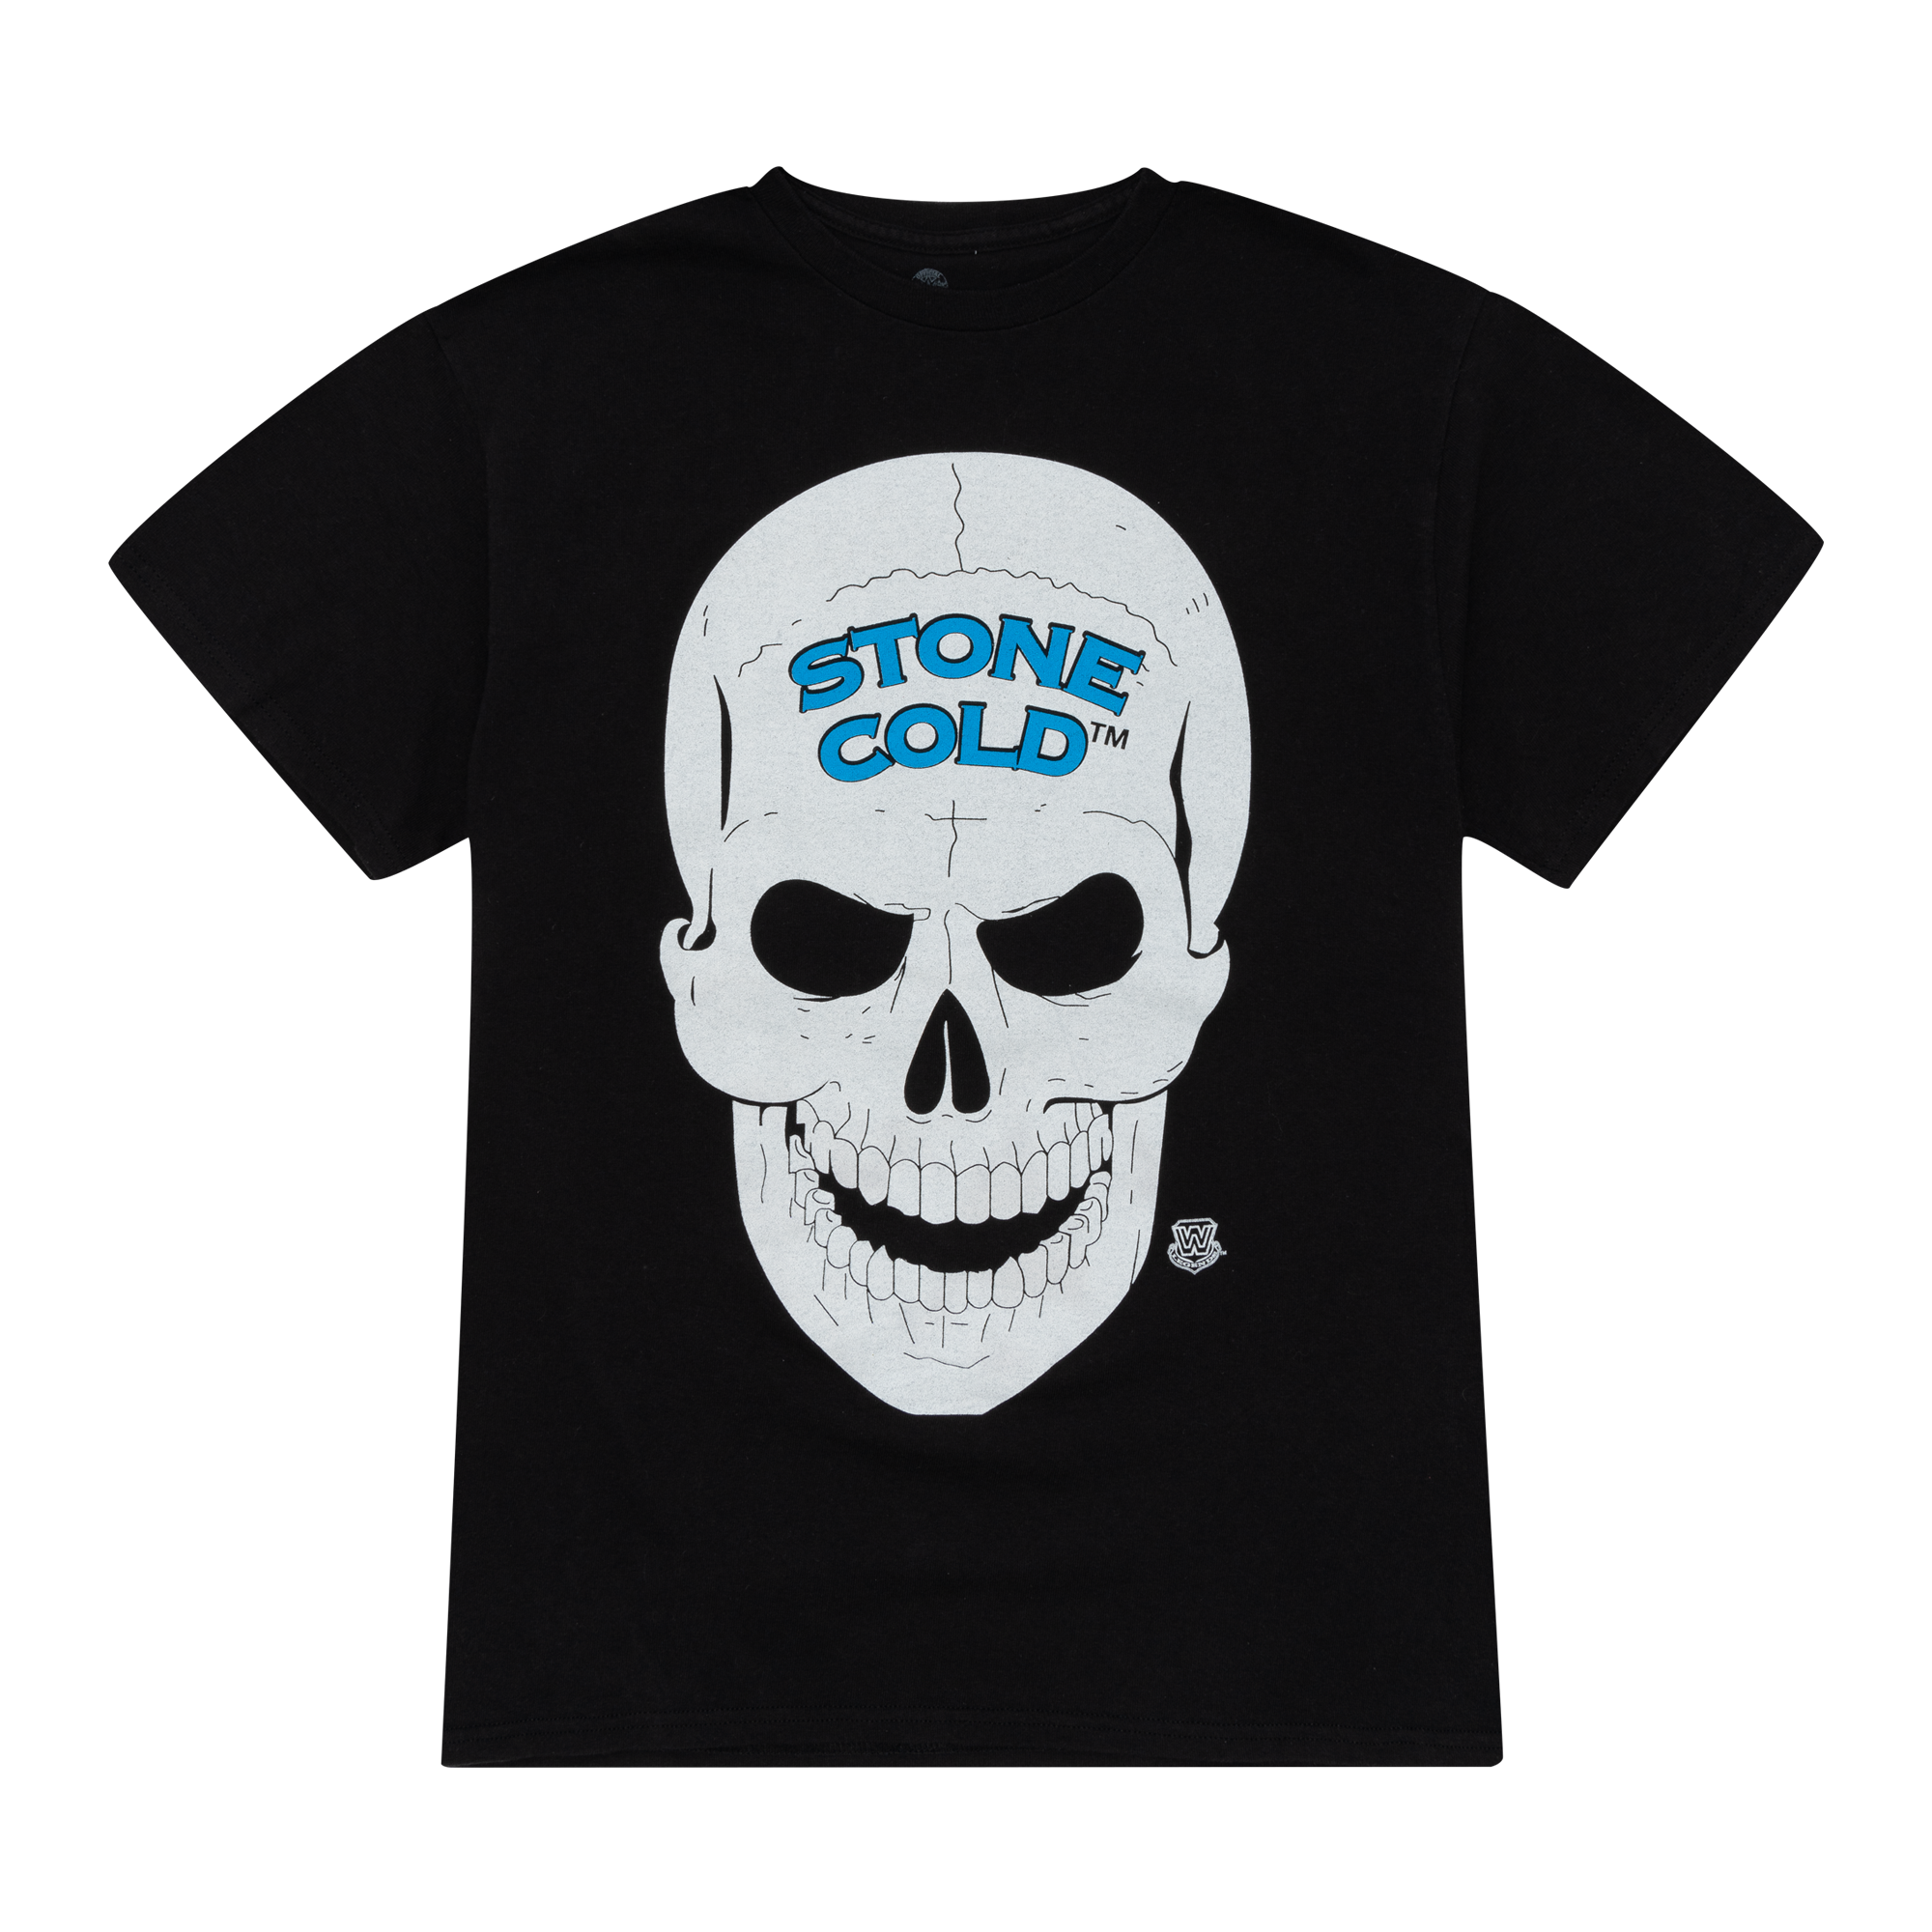 Stone Cold Steve Austin 3:16 Skull Tee Black-PLUS